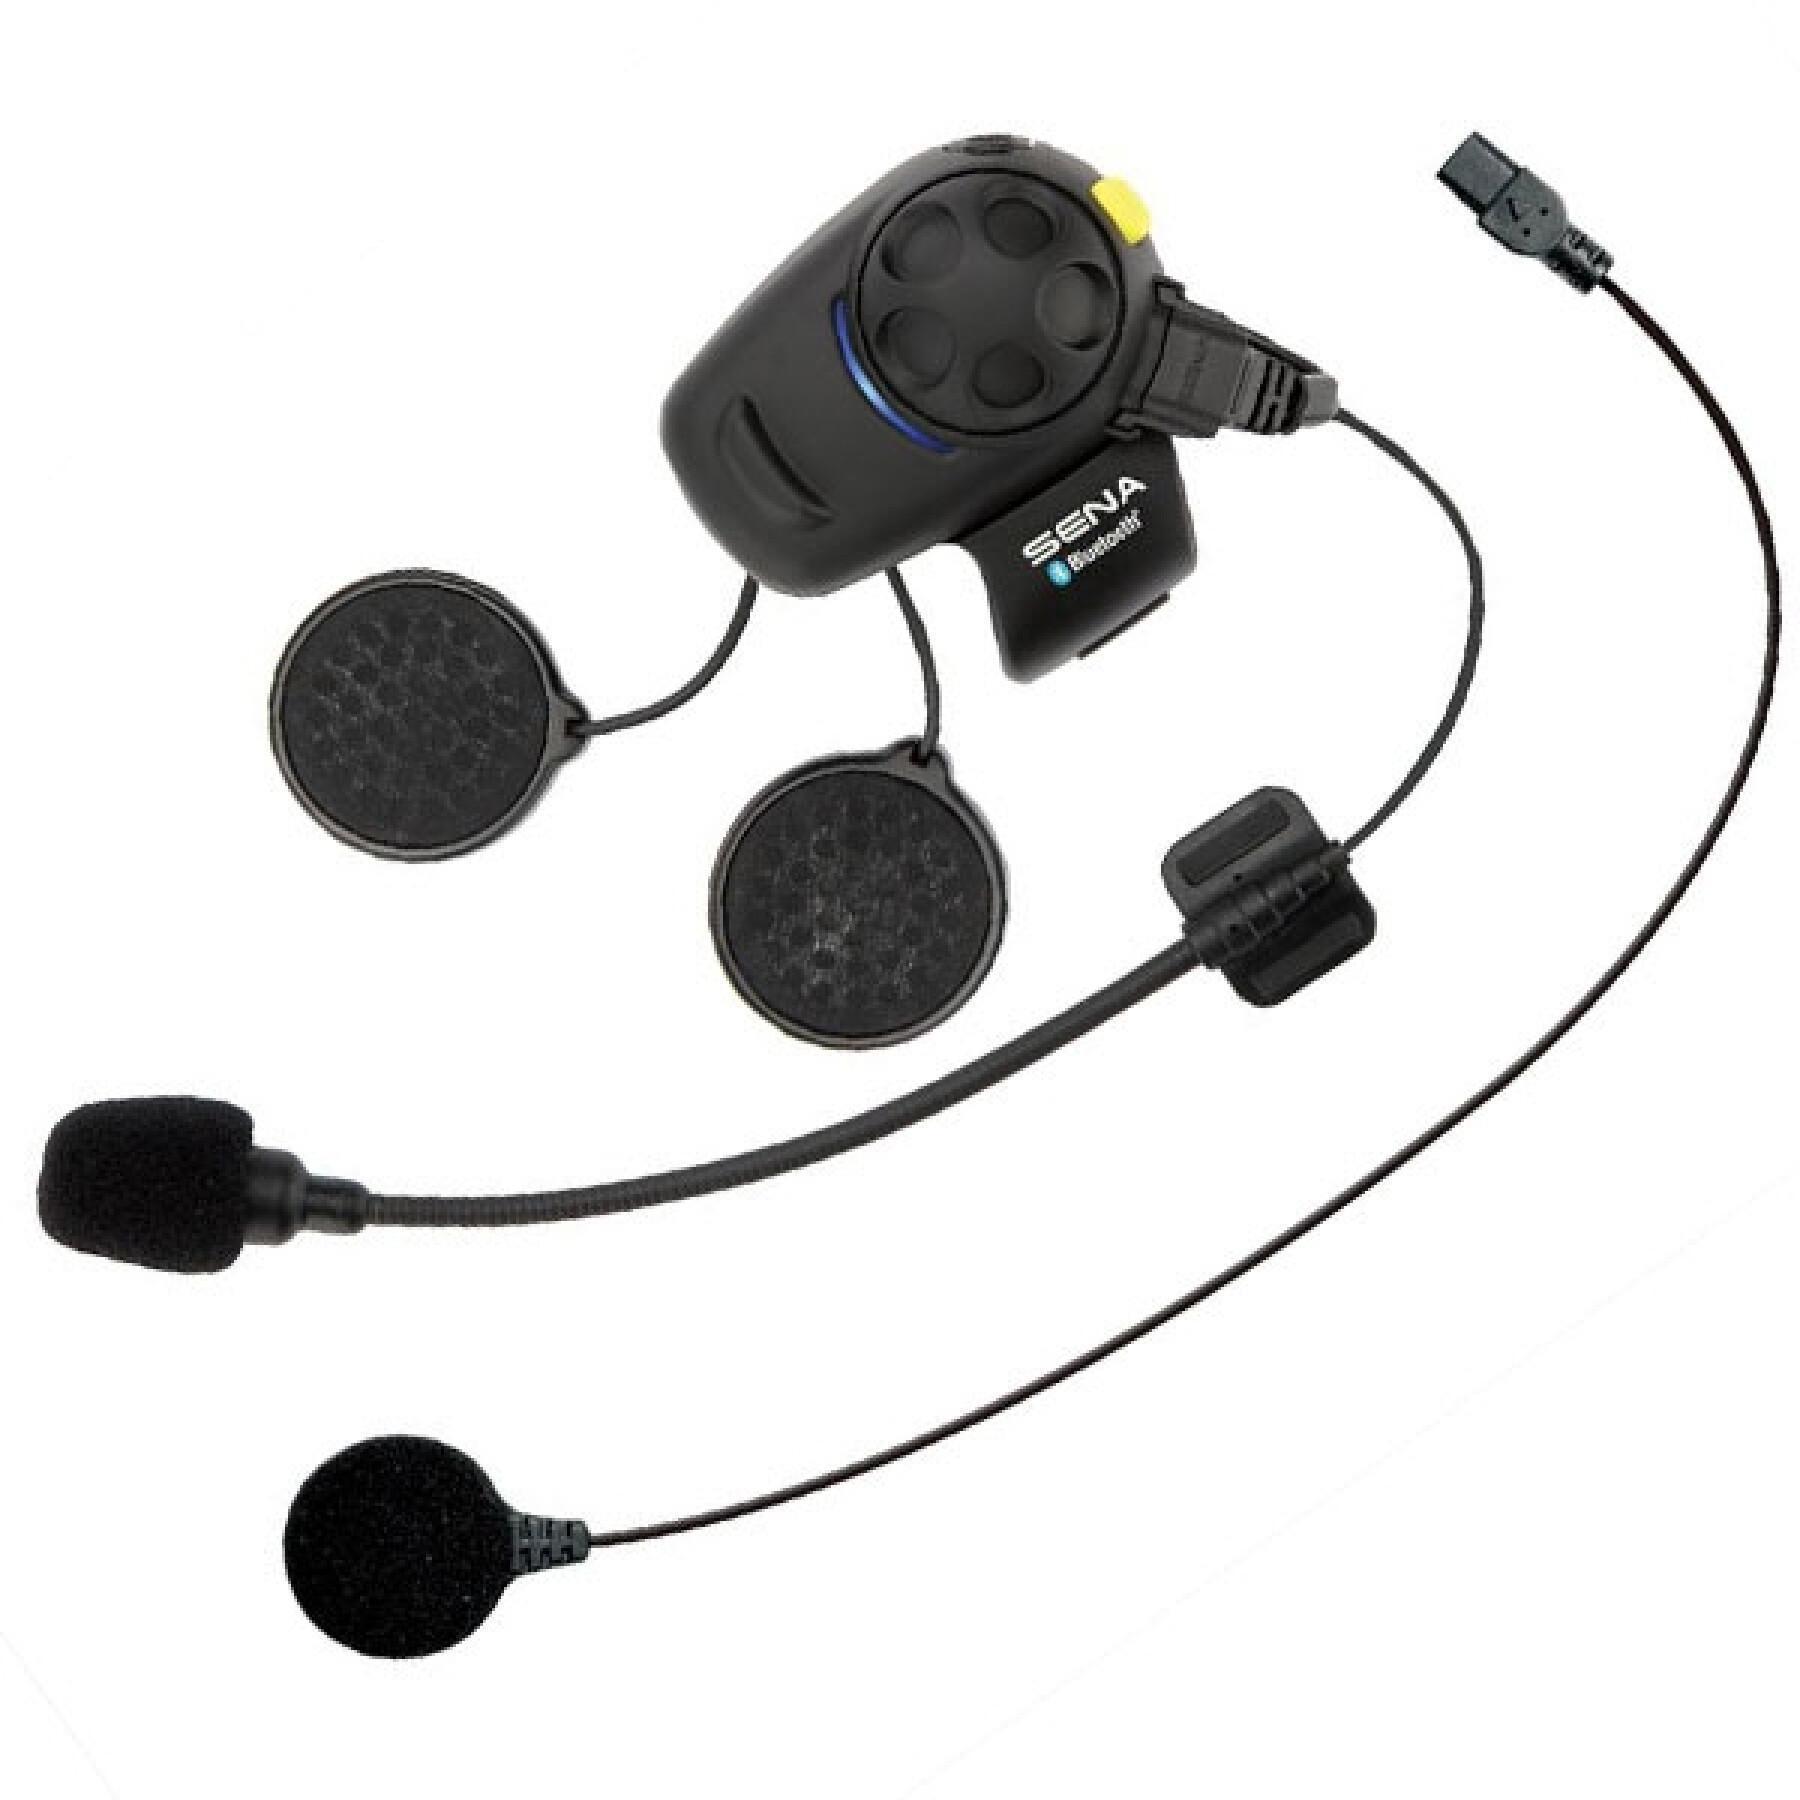 sena SMH5 kit téléphone bluetooth MP3 GPS universel pour casque